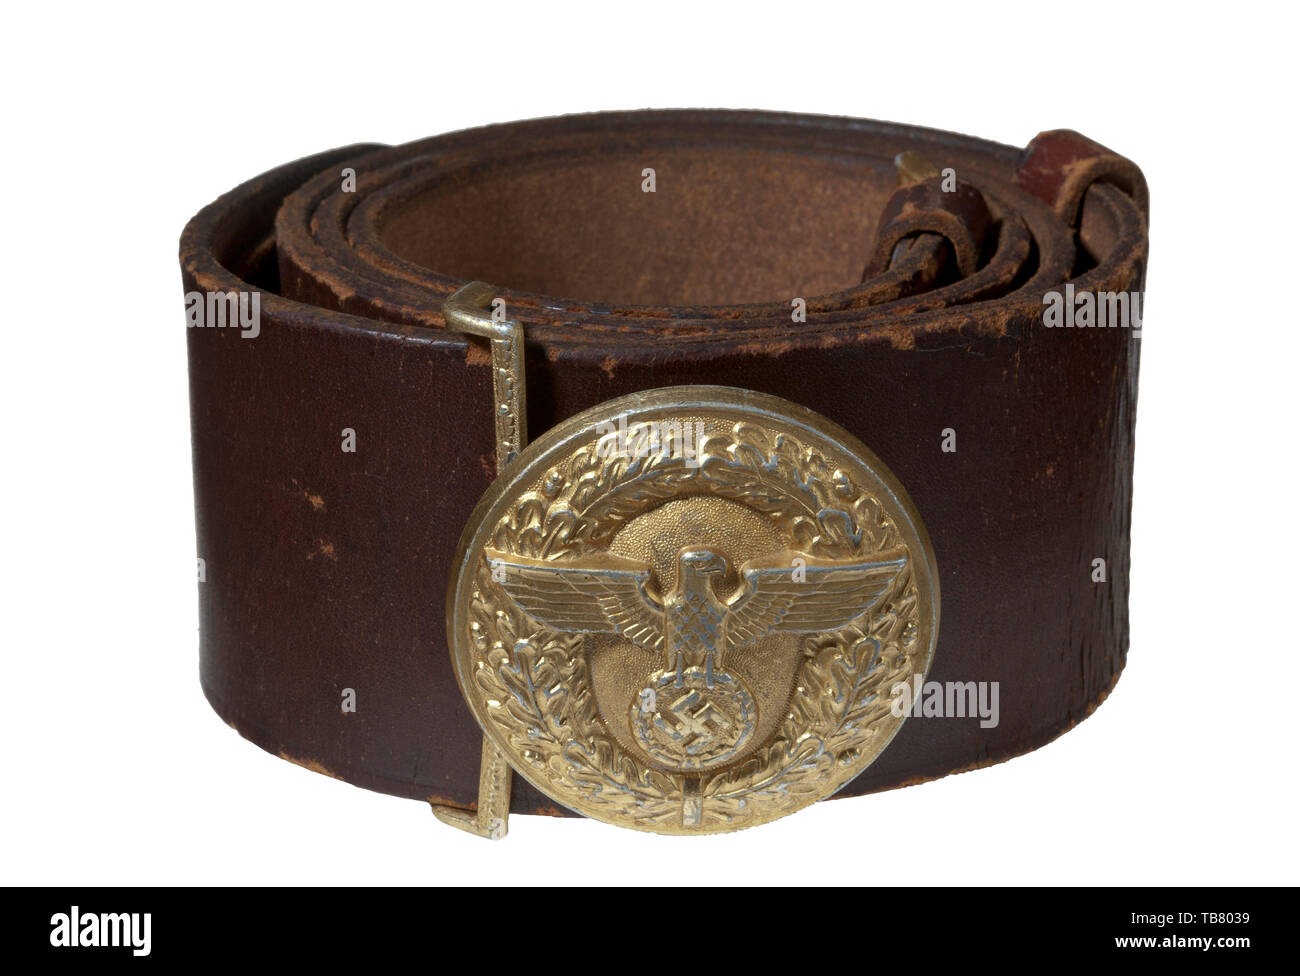 La courroie ET BOUCLE JOHN WAHL, une collection officielle du NSDAP et  boucle de ceinture en cuir, aluminium 57 mm de diamètre, le cachet du  service de garde de boucle d'or 85 %